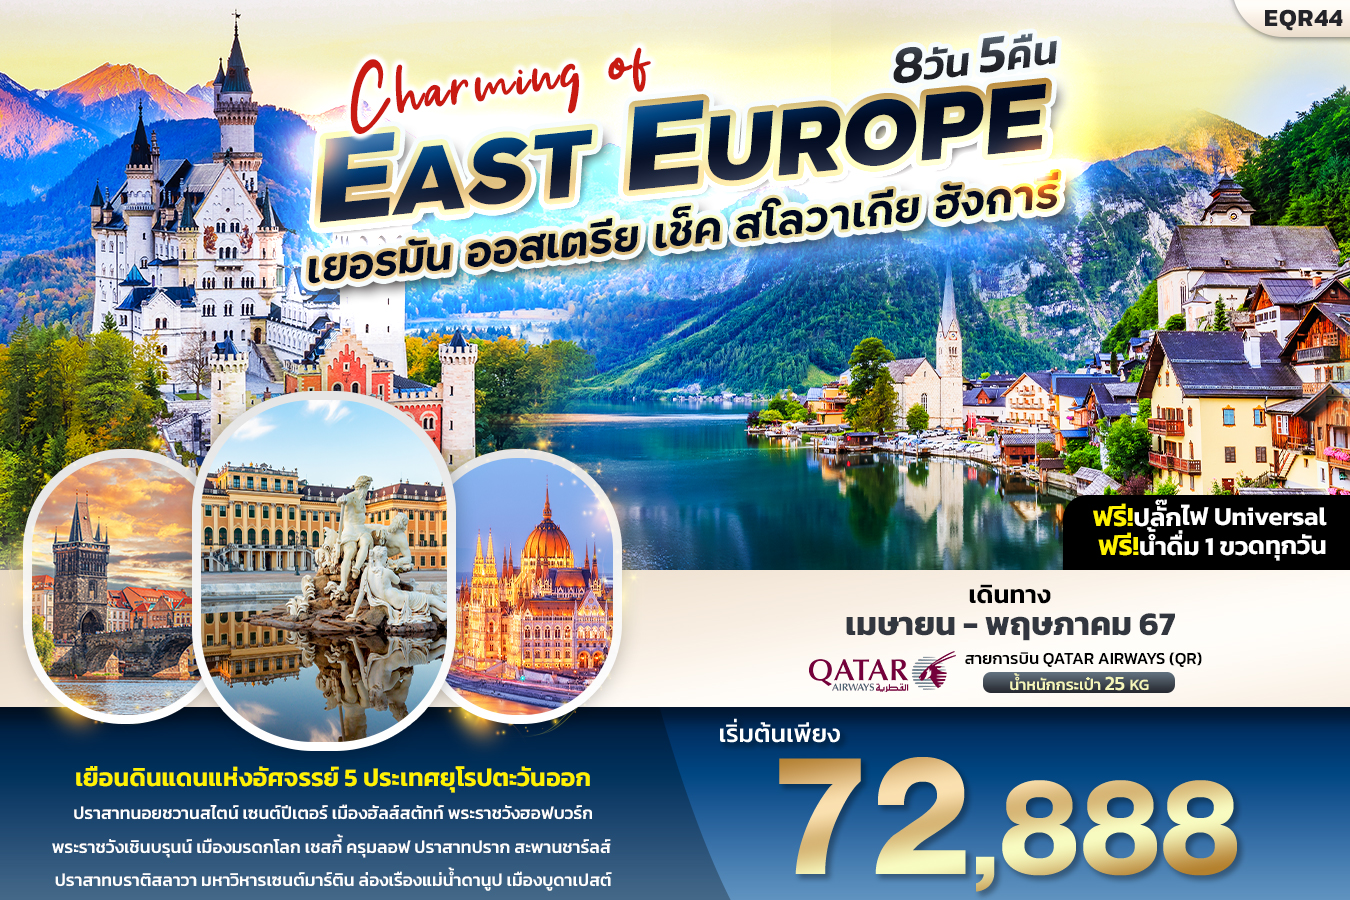 Charming of EAST EUROUP เยอรมัน ออสเตรีย เช็ค สโลวาเกีย ฮังการี 8วัน 5คืน (QR)